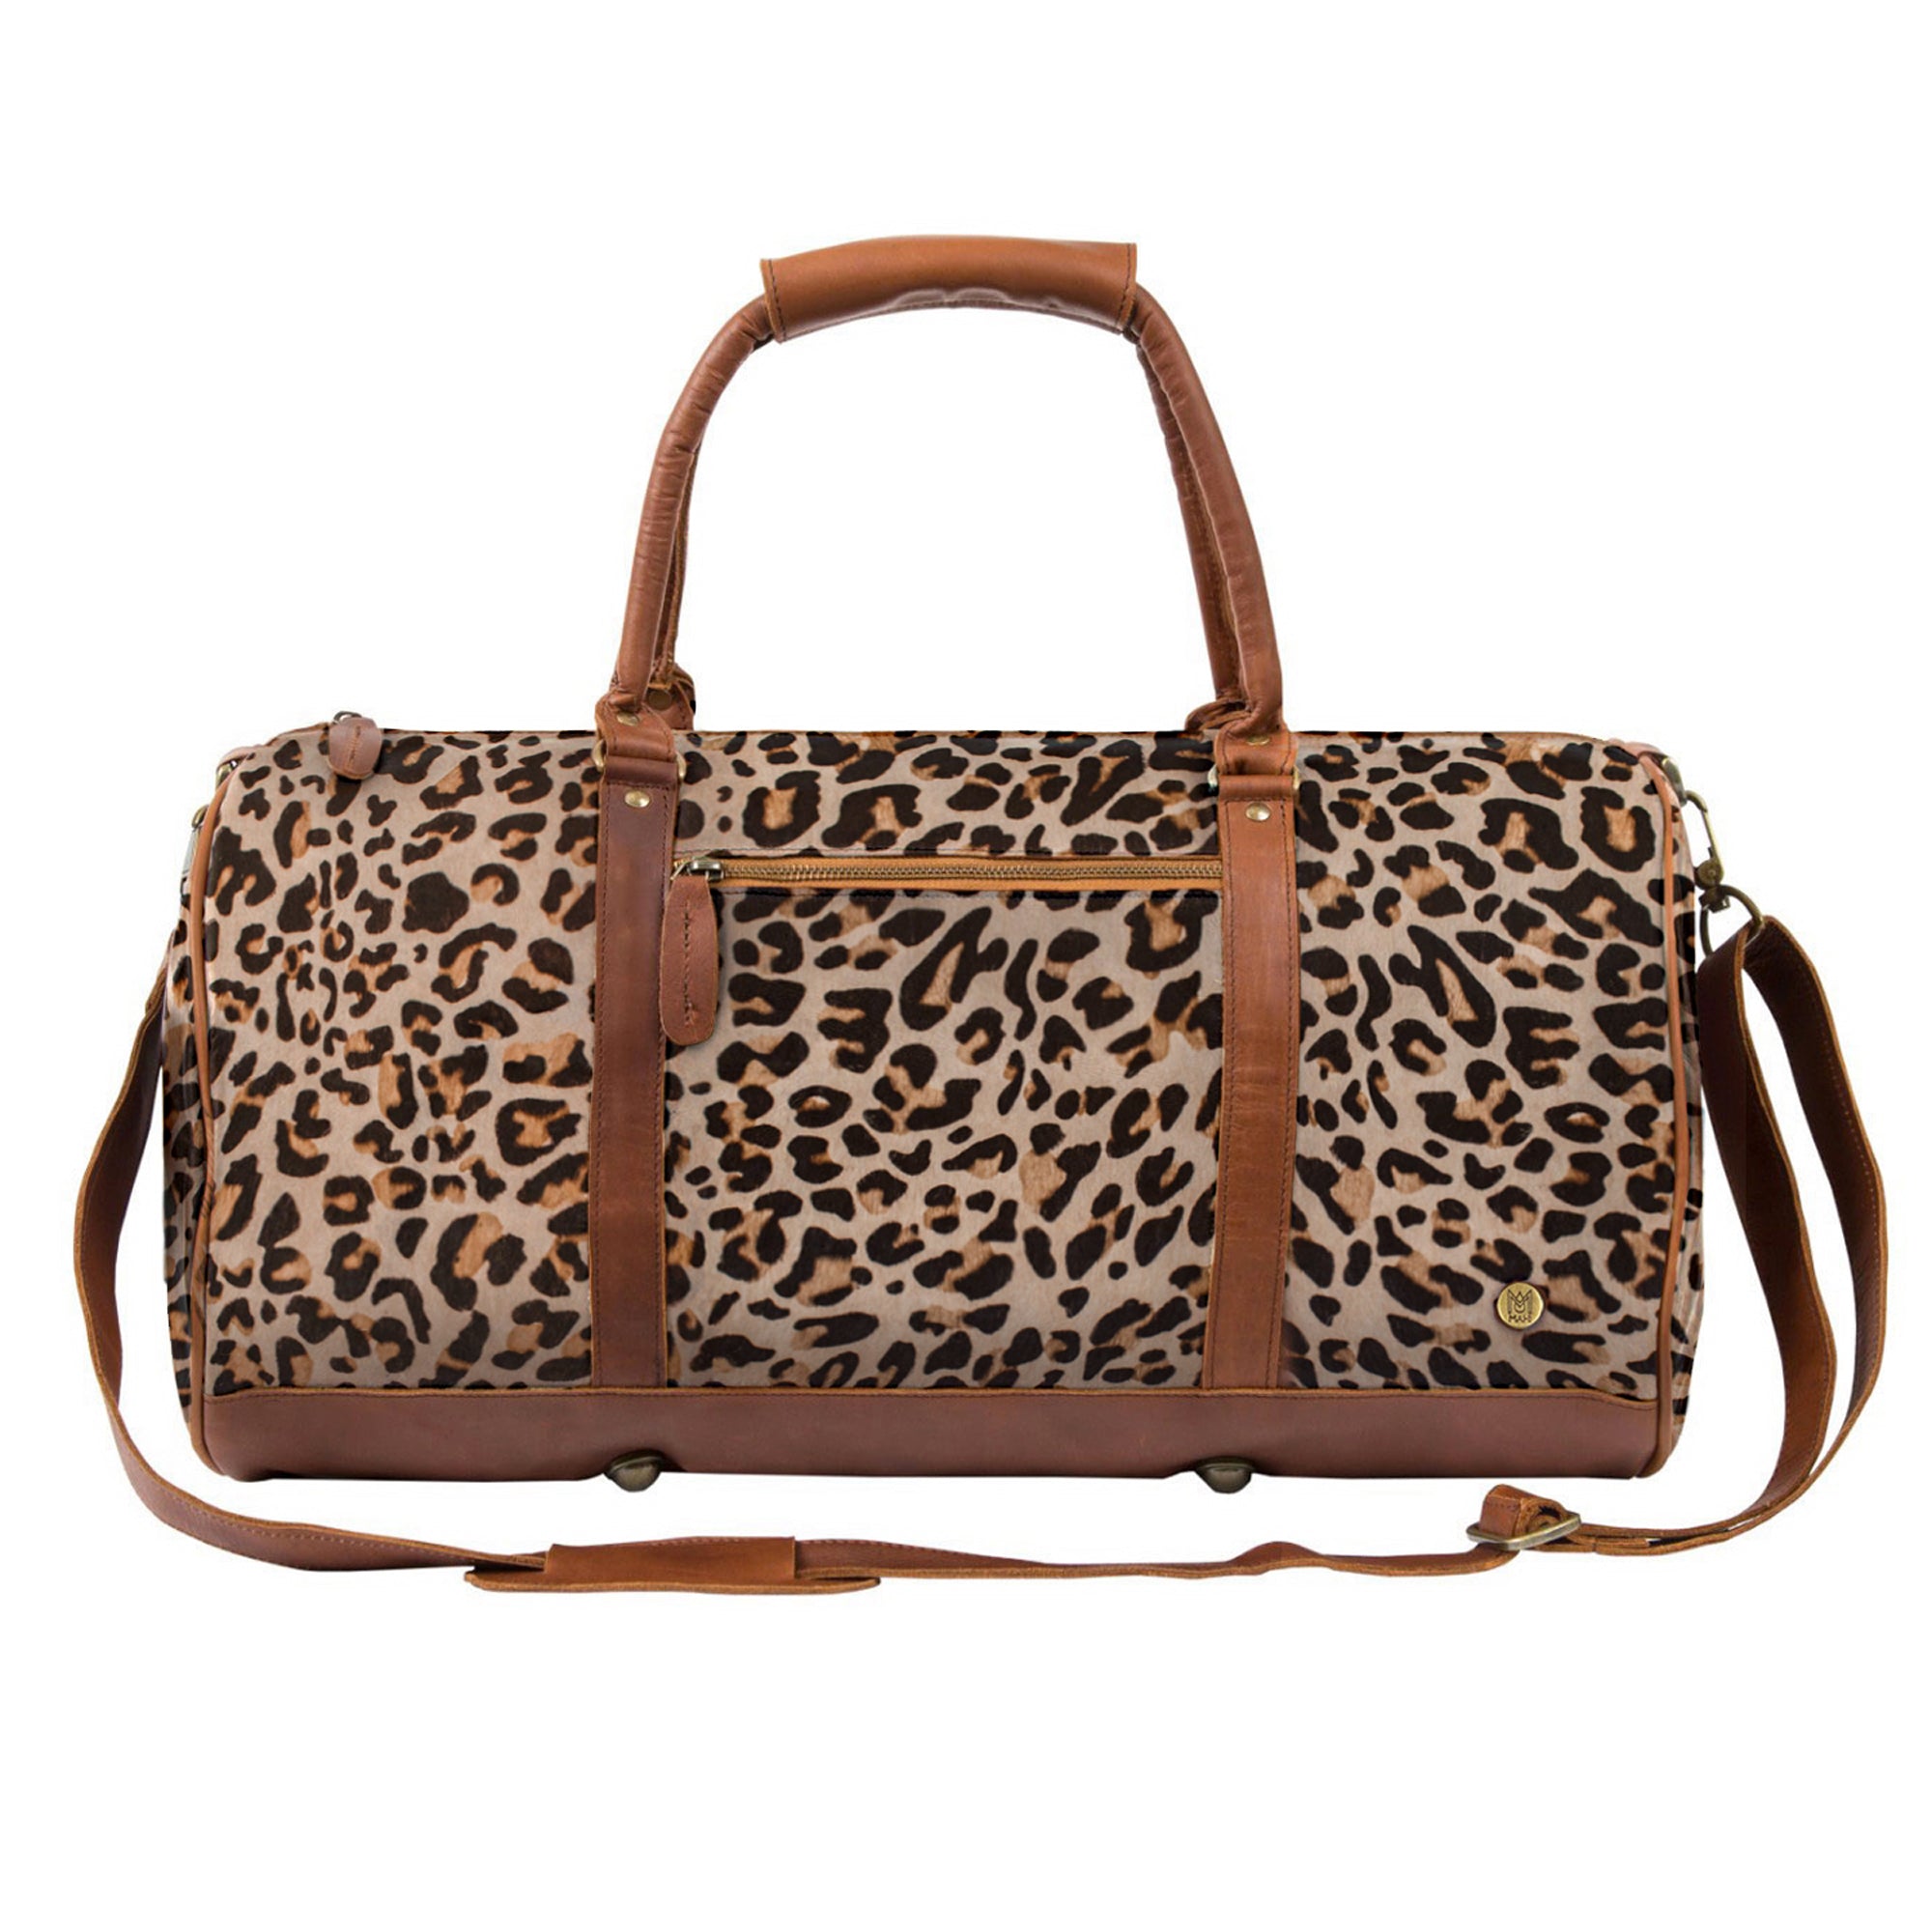 Leopard Hair On Duffel Bag